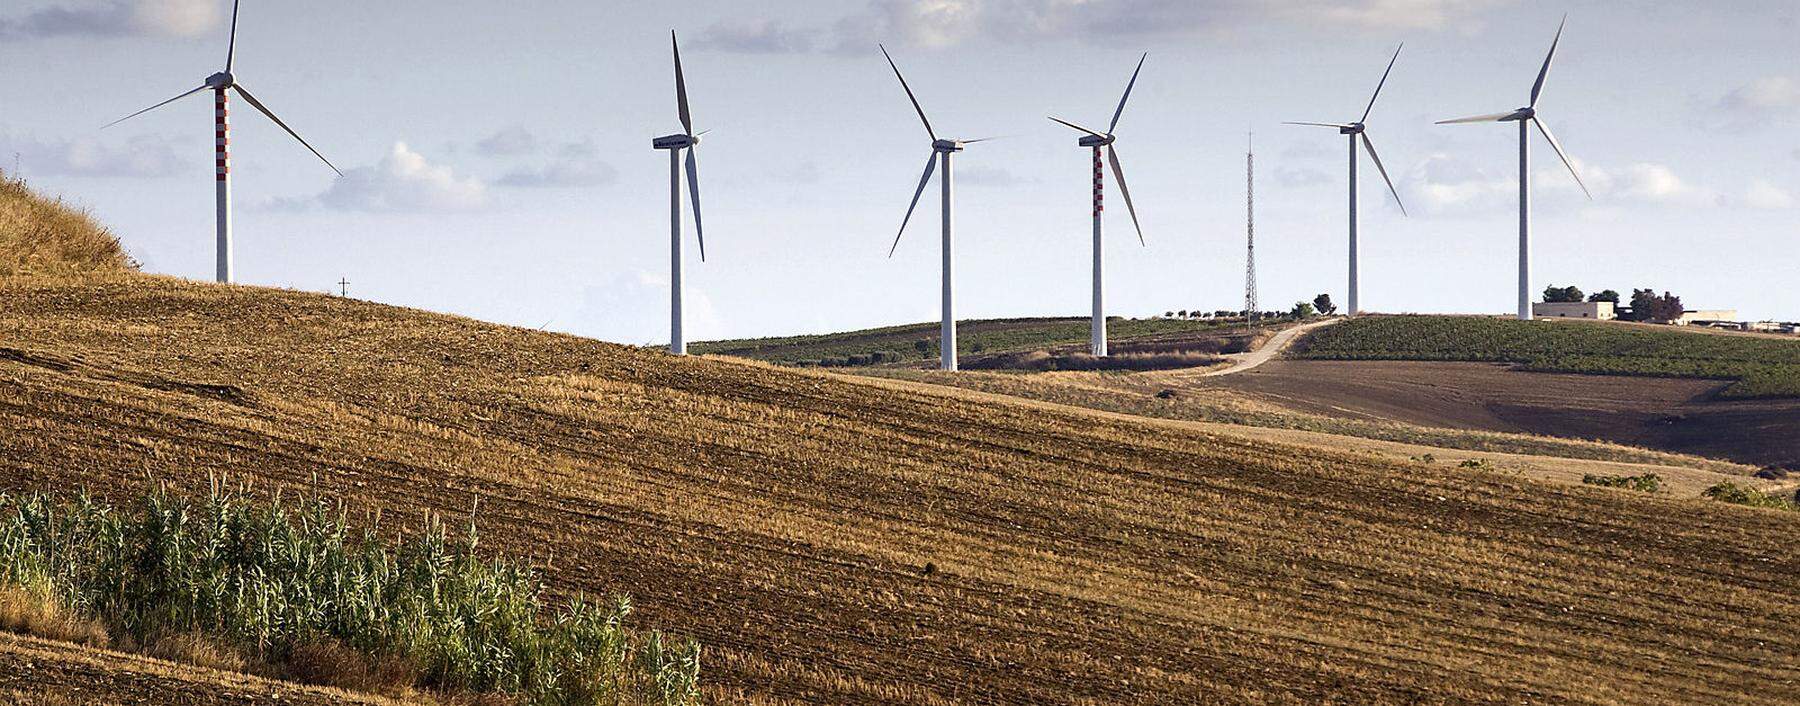 Windkraftanlagen prägen die karge Hügellandschaft der Region rund um die Hafenstadt Trapani.